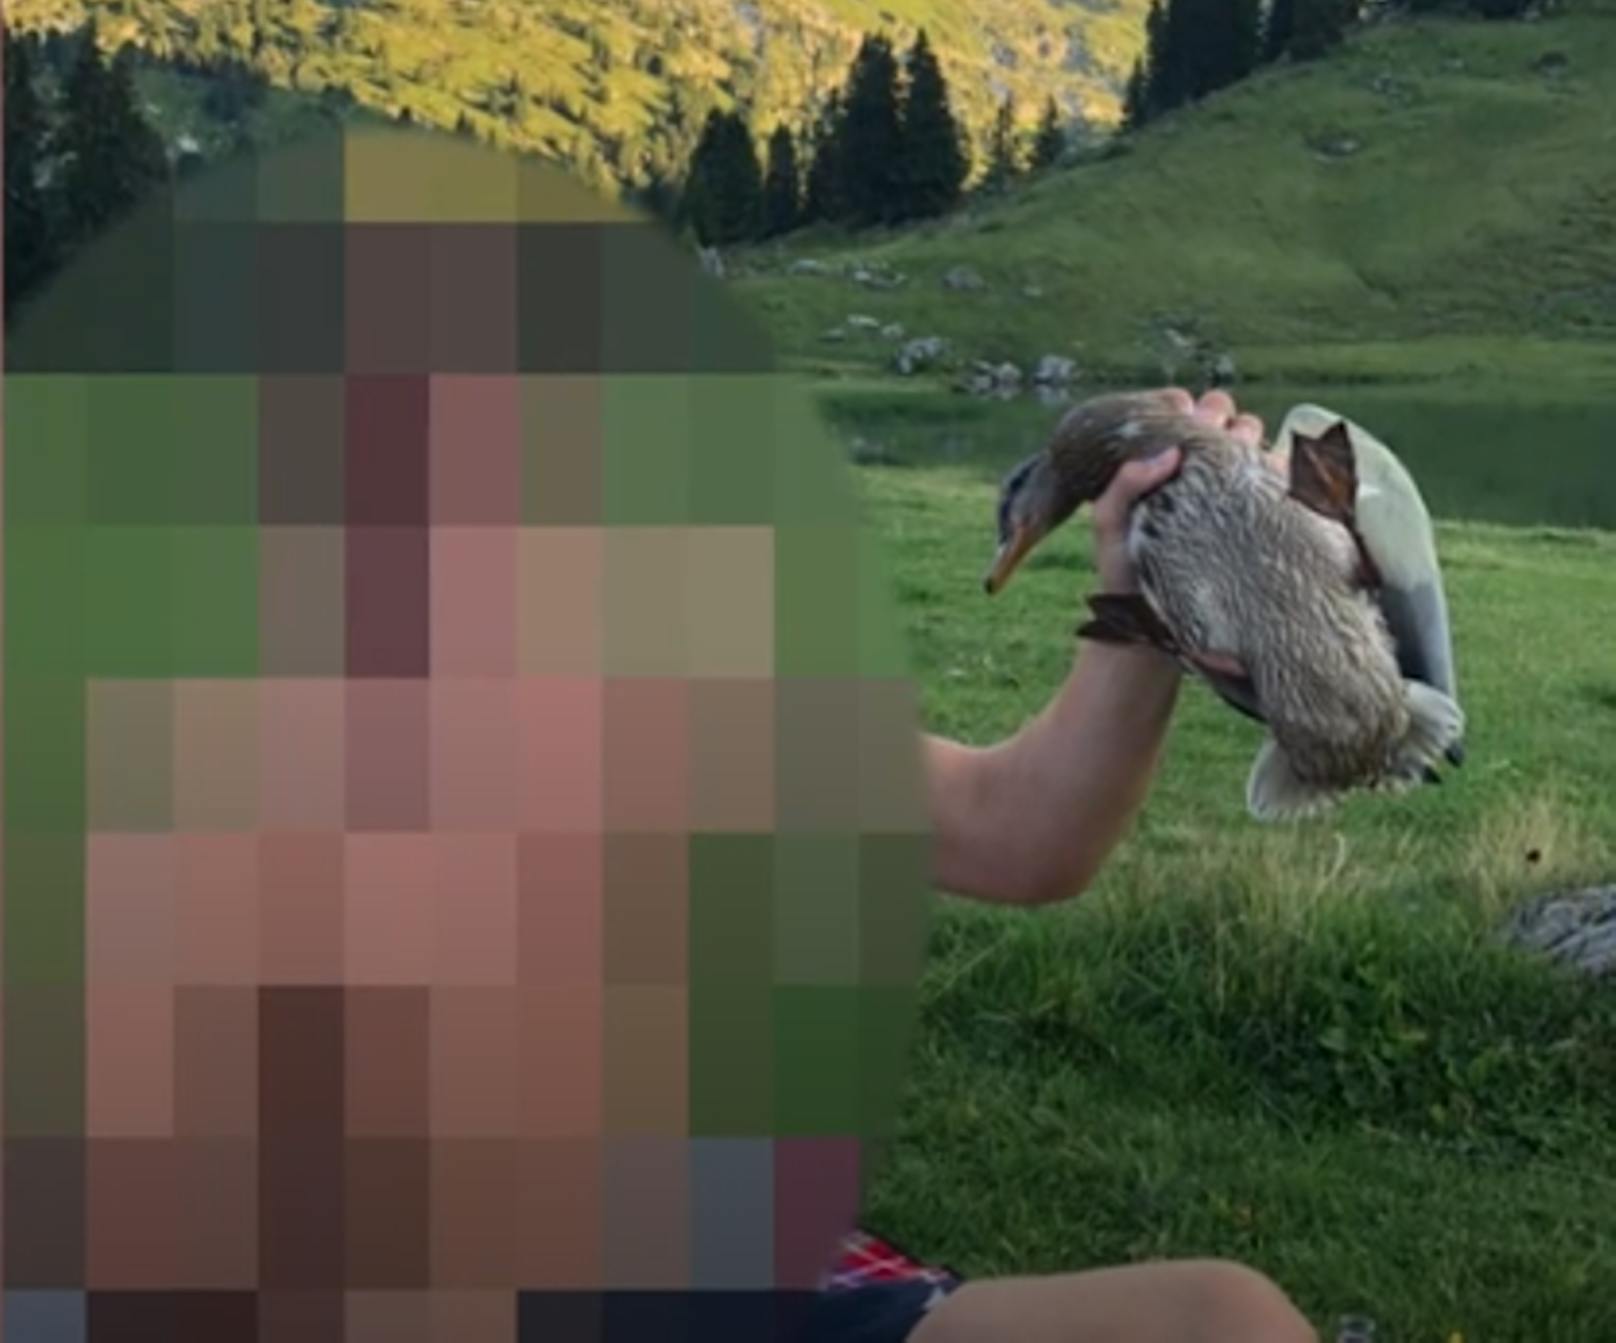 Ein Video auf Social Media zeigt, wie eine Gruppe Jugendlicher eine Ente und einen Fisch respektlos behandeln.